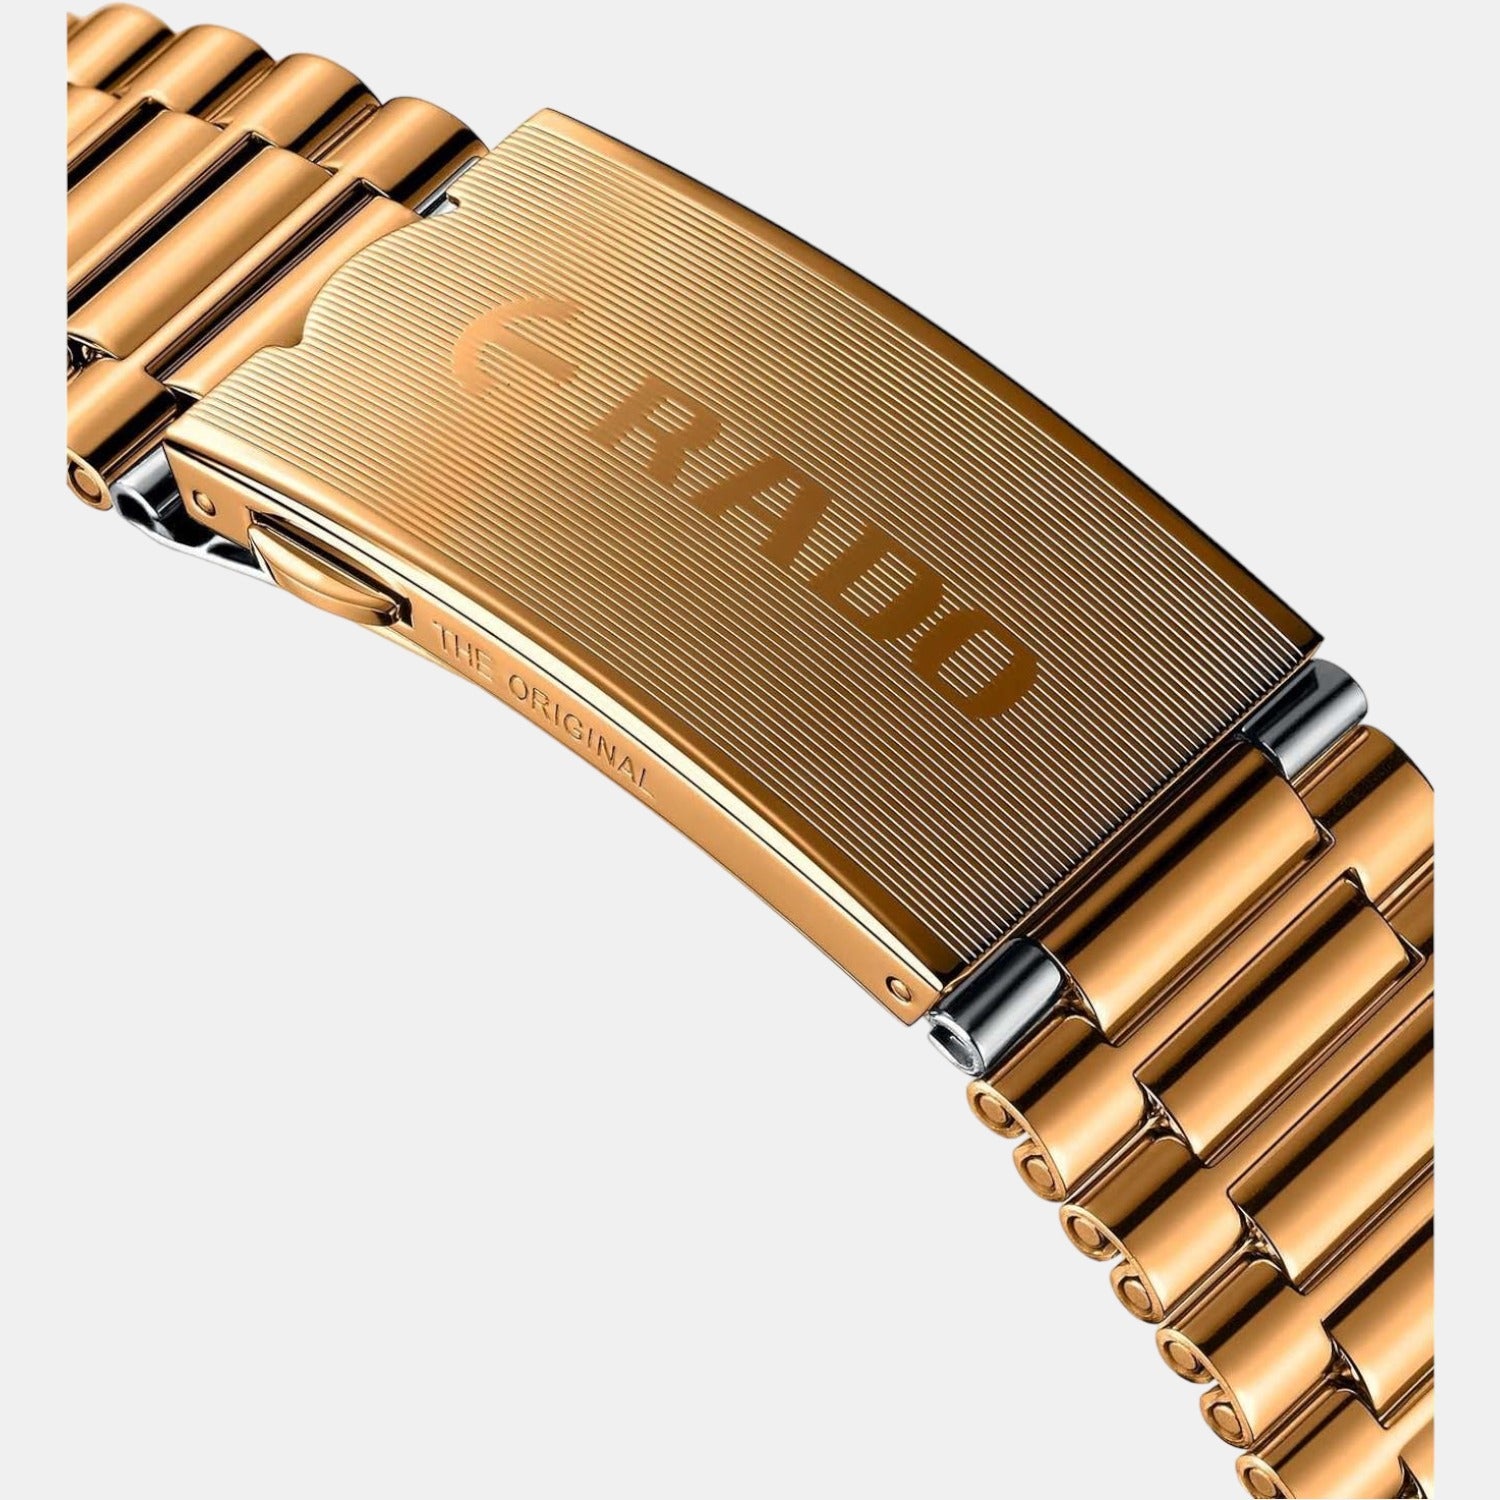 Rado DiaStar 353mm ceramic watch case with bracelet  Inox Wind